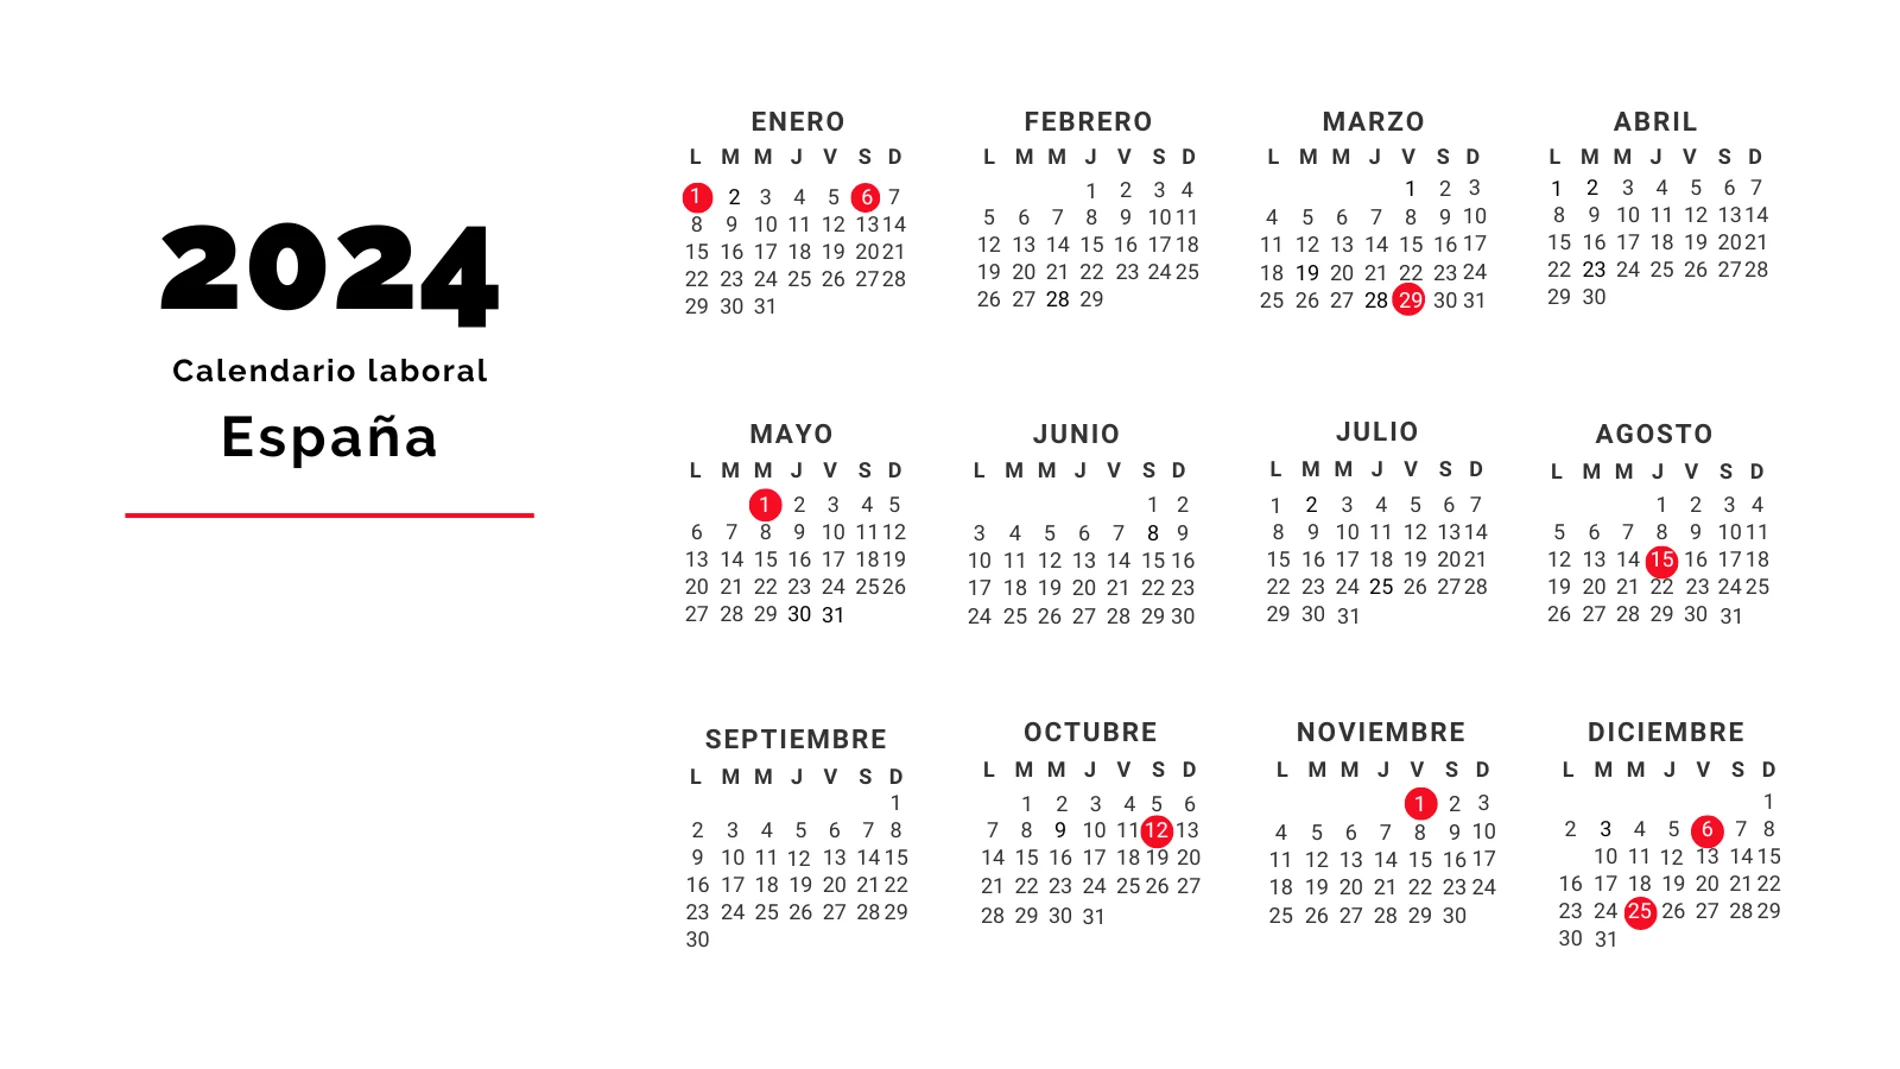 Calendario 2024 Calendario 2024 en Español Calendario 2024 de dos